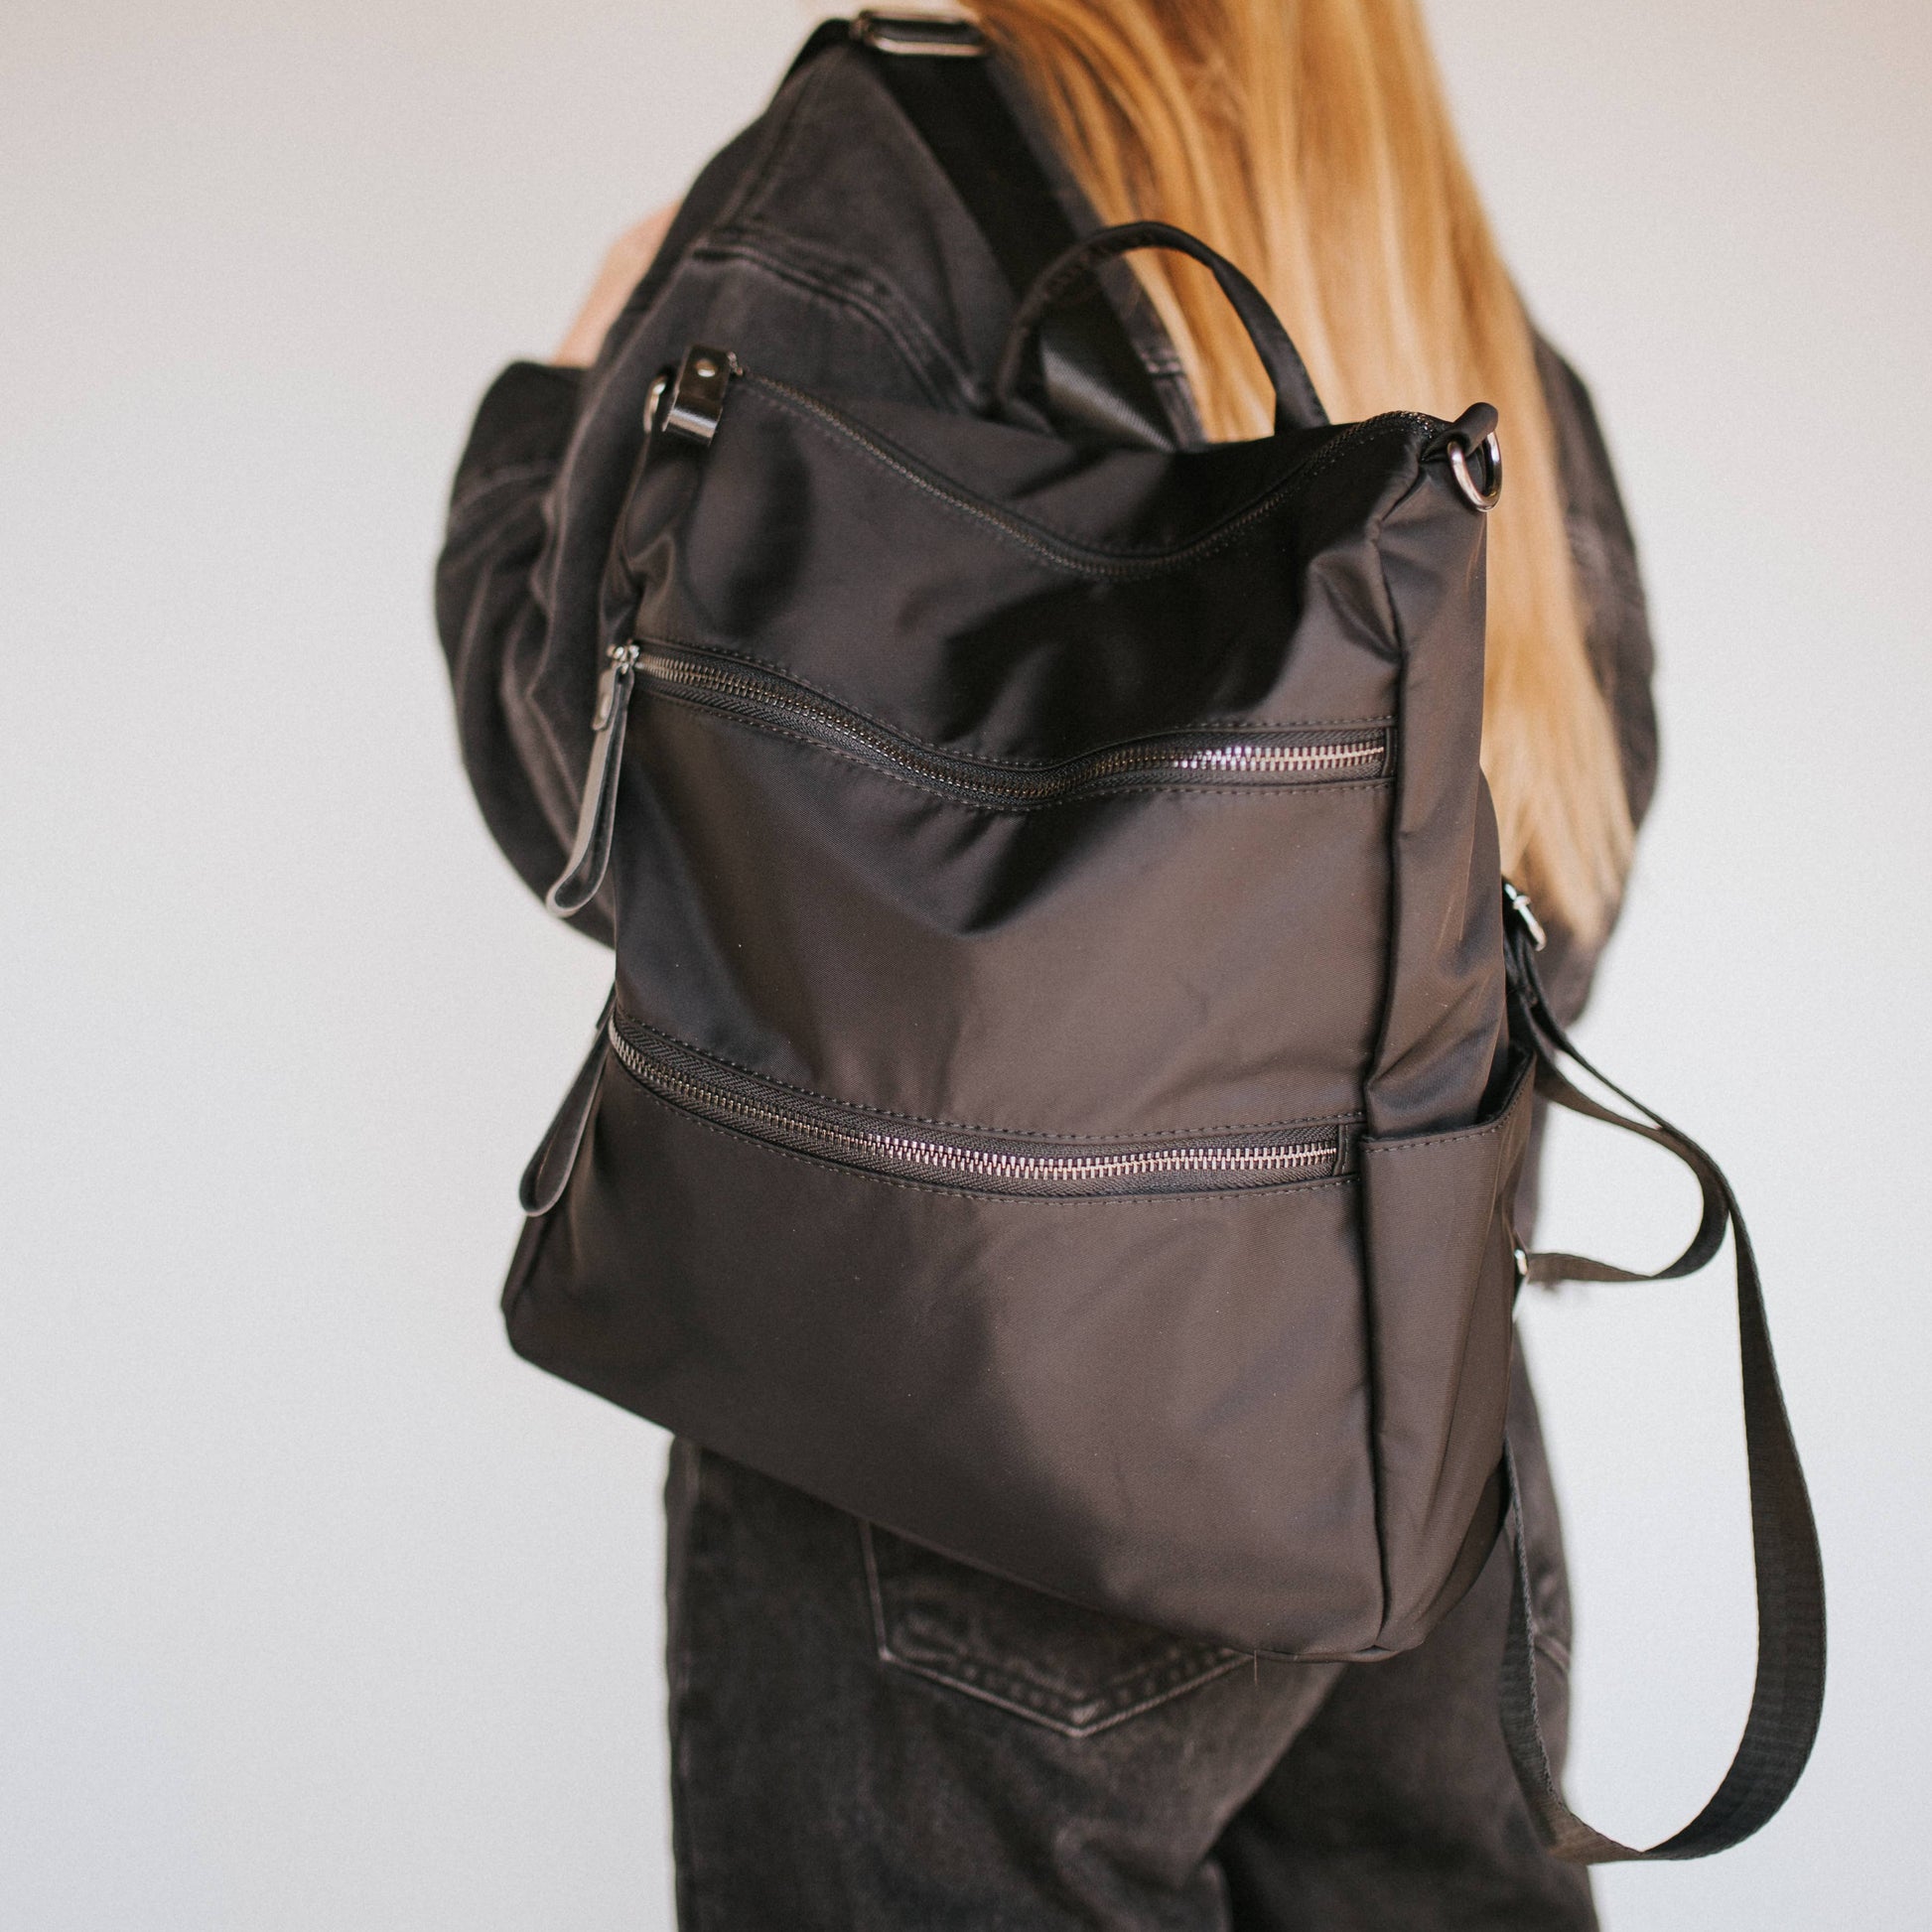 Nori Nylon Backpack: Black Core Pretty Simple